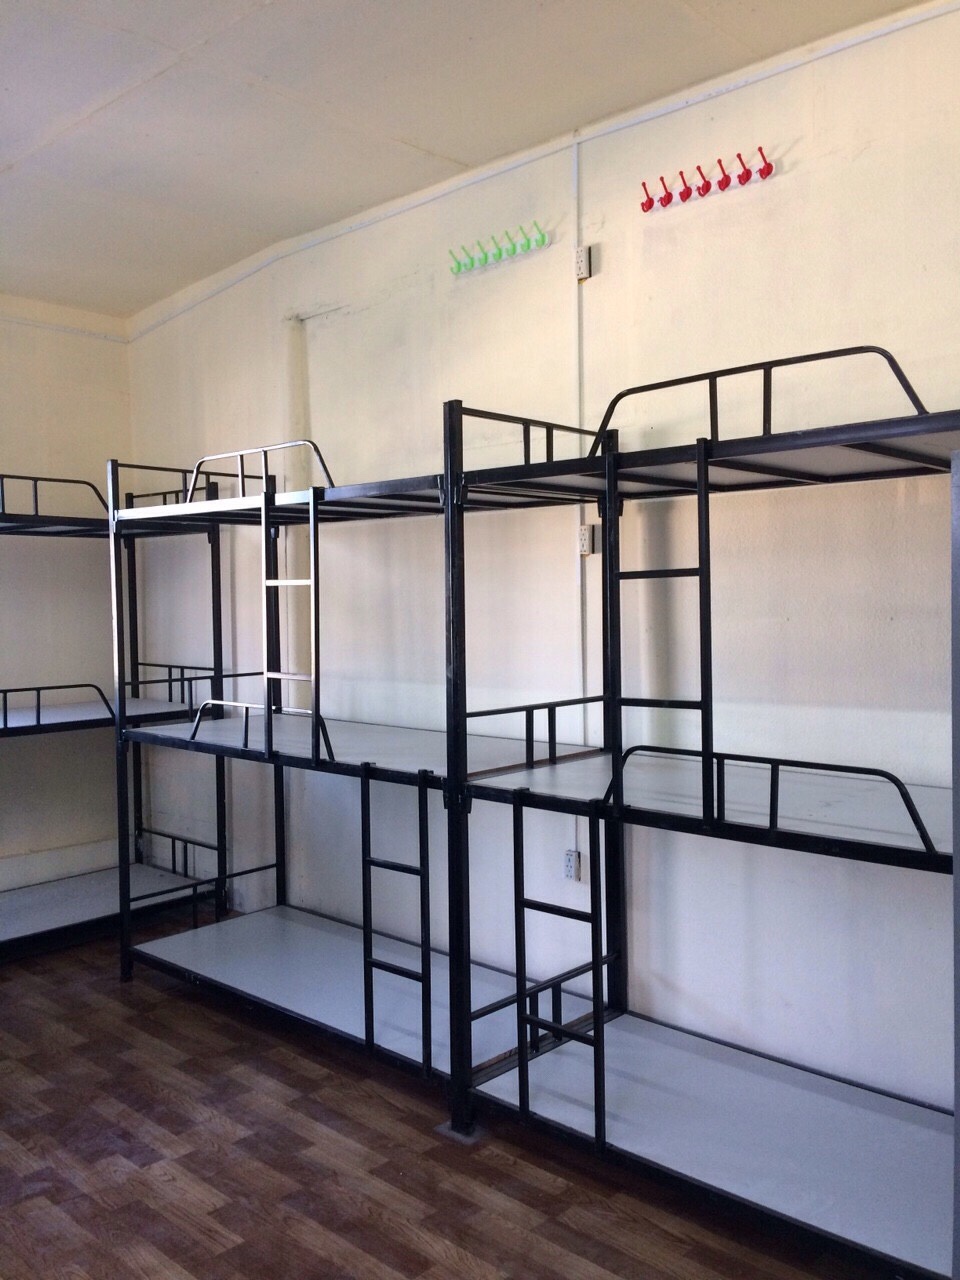 Cho thuê phòng trọ, KTX giá rẻ 400k/giường tại 621 Nguyễn Kiệm